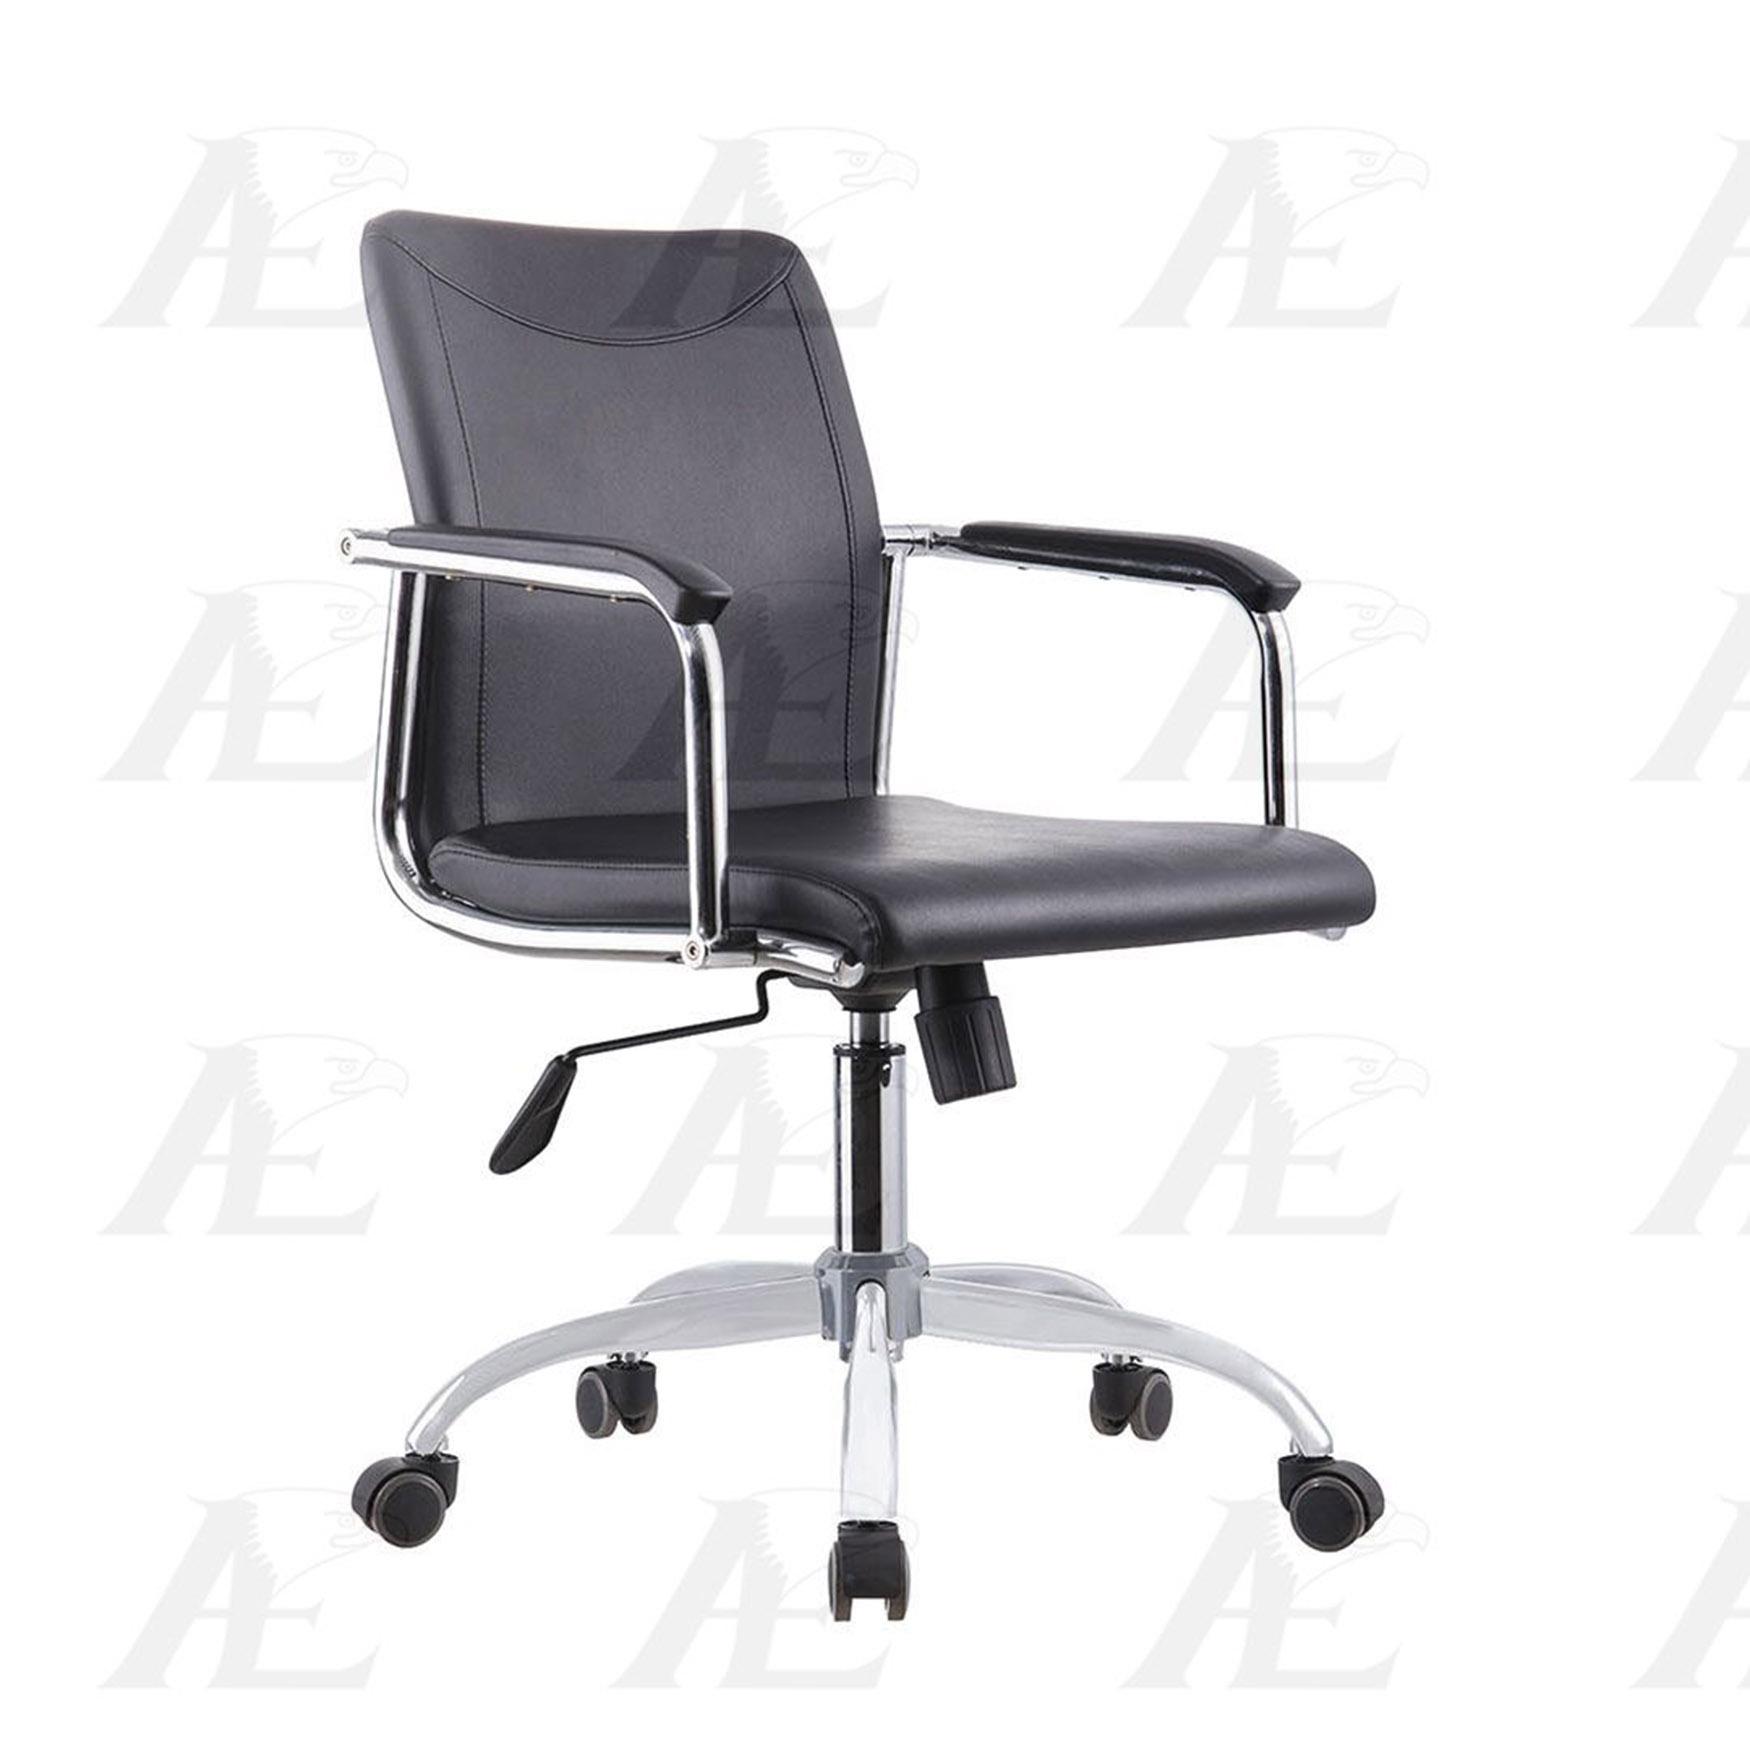 American Eagle Furniture QG1159B Office Chair